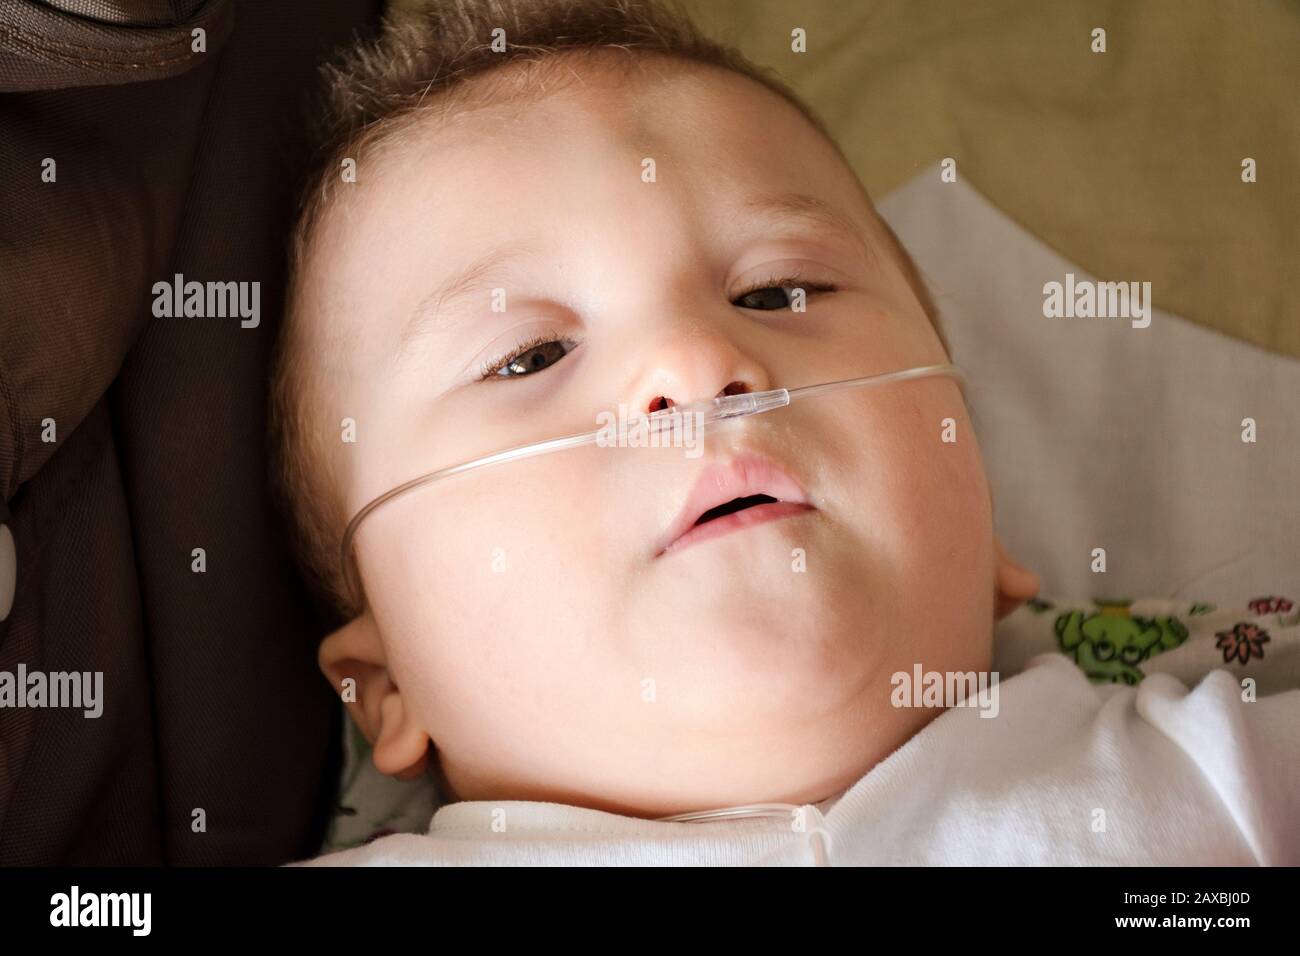 Baby Junge mit zerebraler Pläse erhält Sauerstoff über Nasenprongs, um die Sauerstoffsättigung zu gewährleisten. Nasenkatheter bei einem Patienten im Krankenhaus. Atemschutzmaske Stockfoto